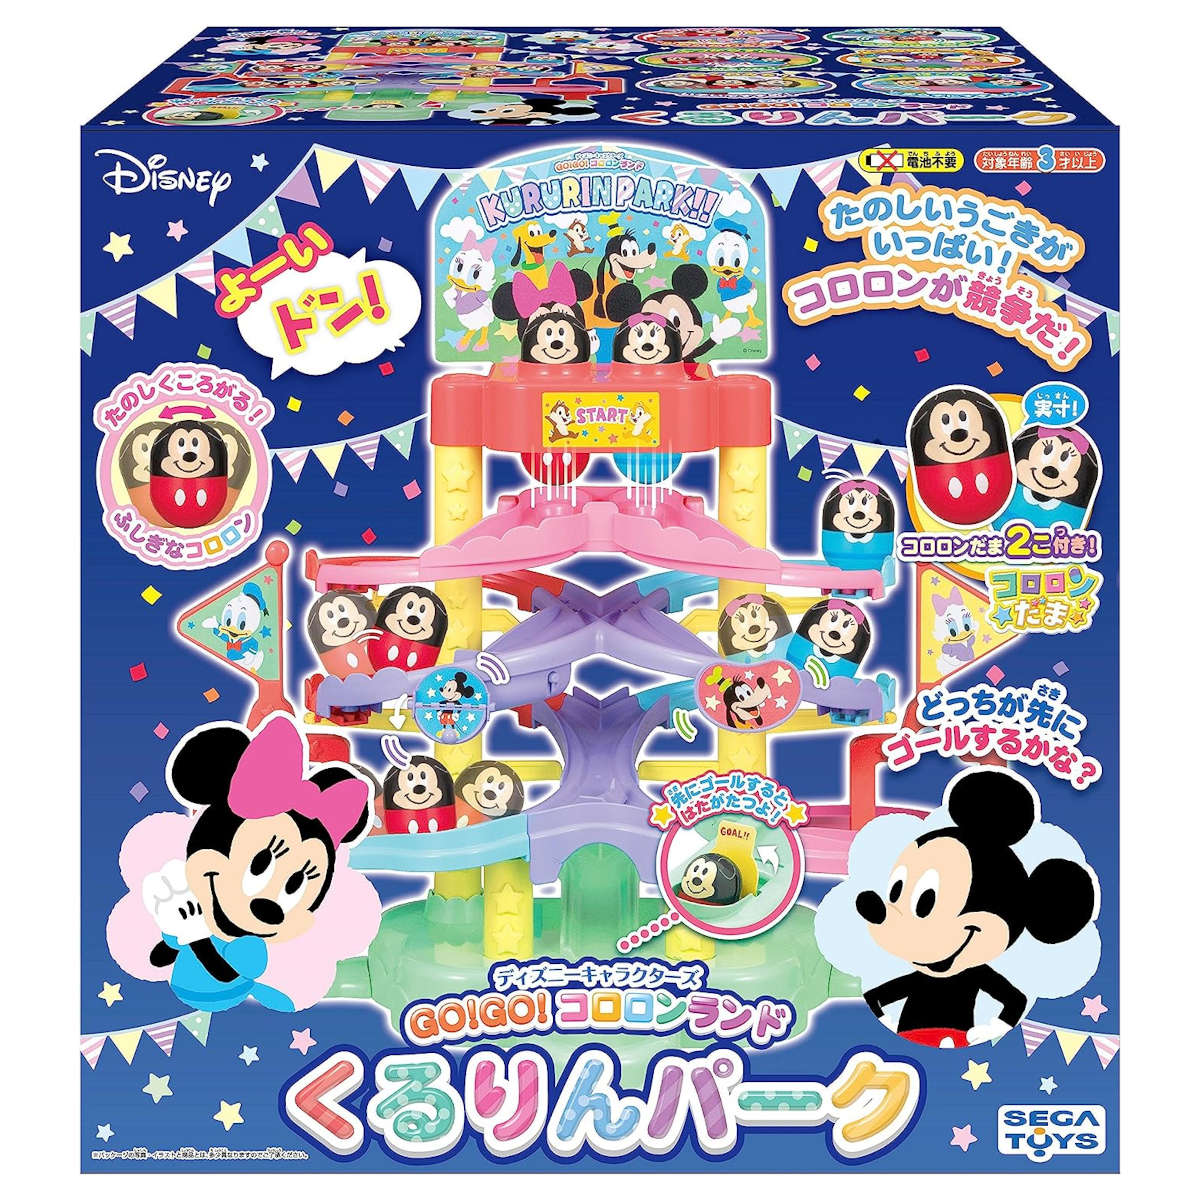  Đồ chơi Nhật Bản Go! Go! Korurin Park - Sega Toys